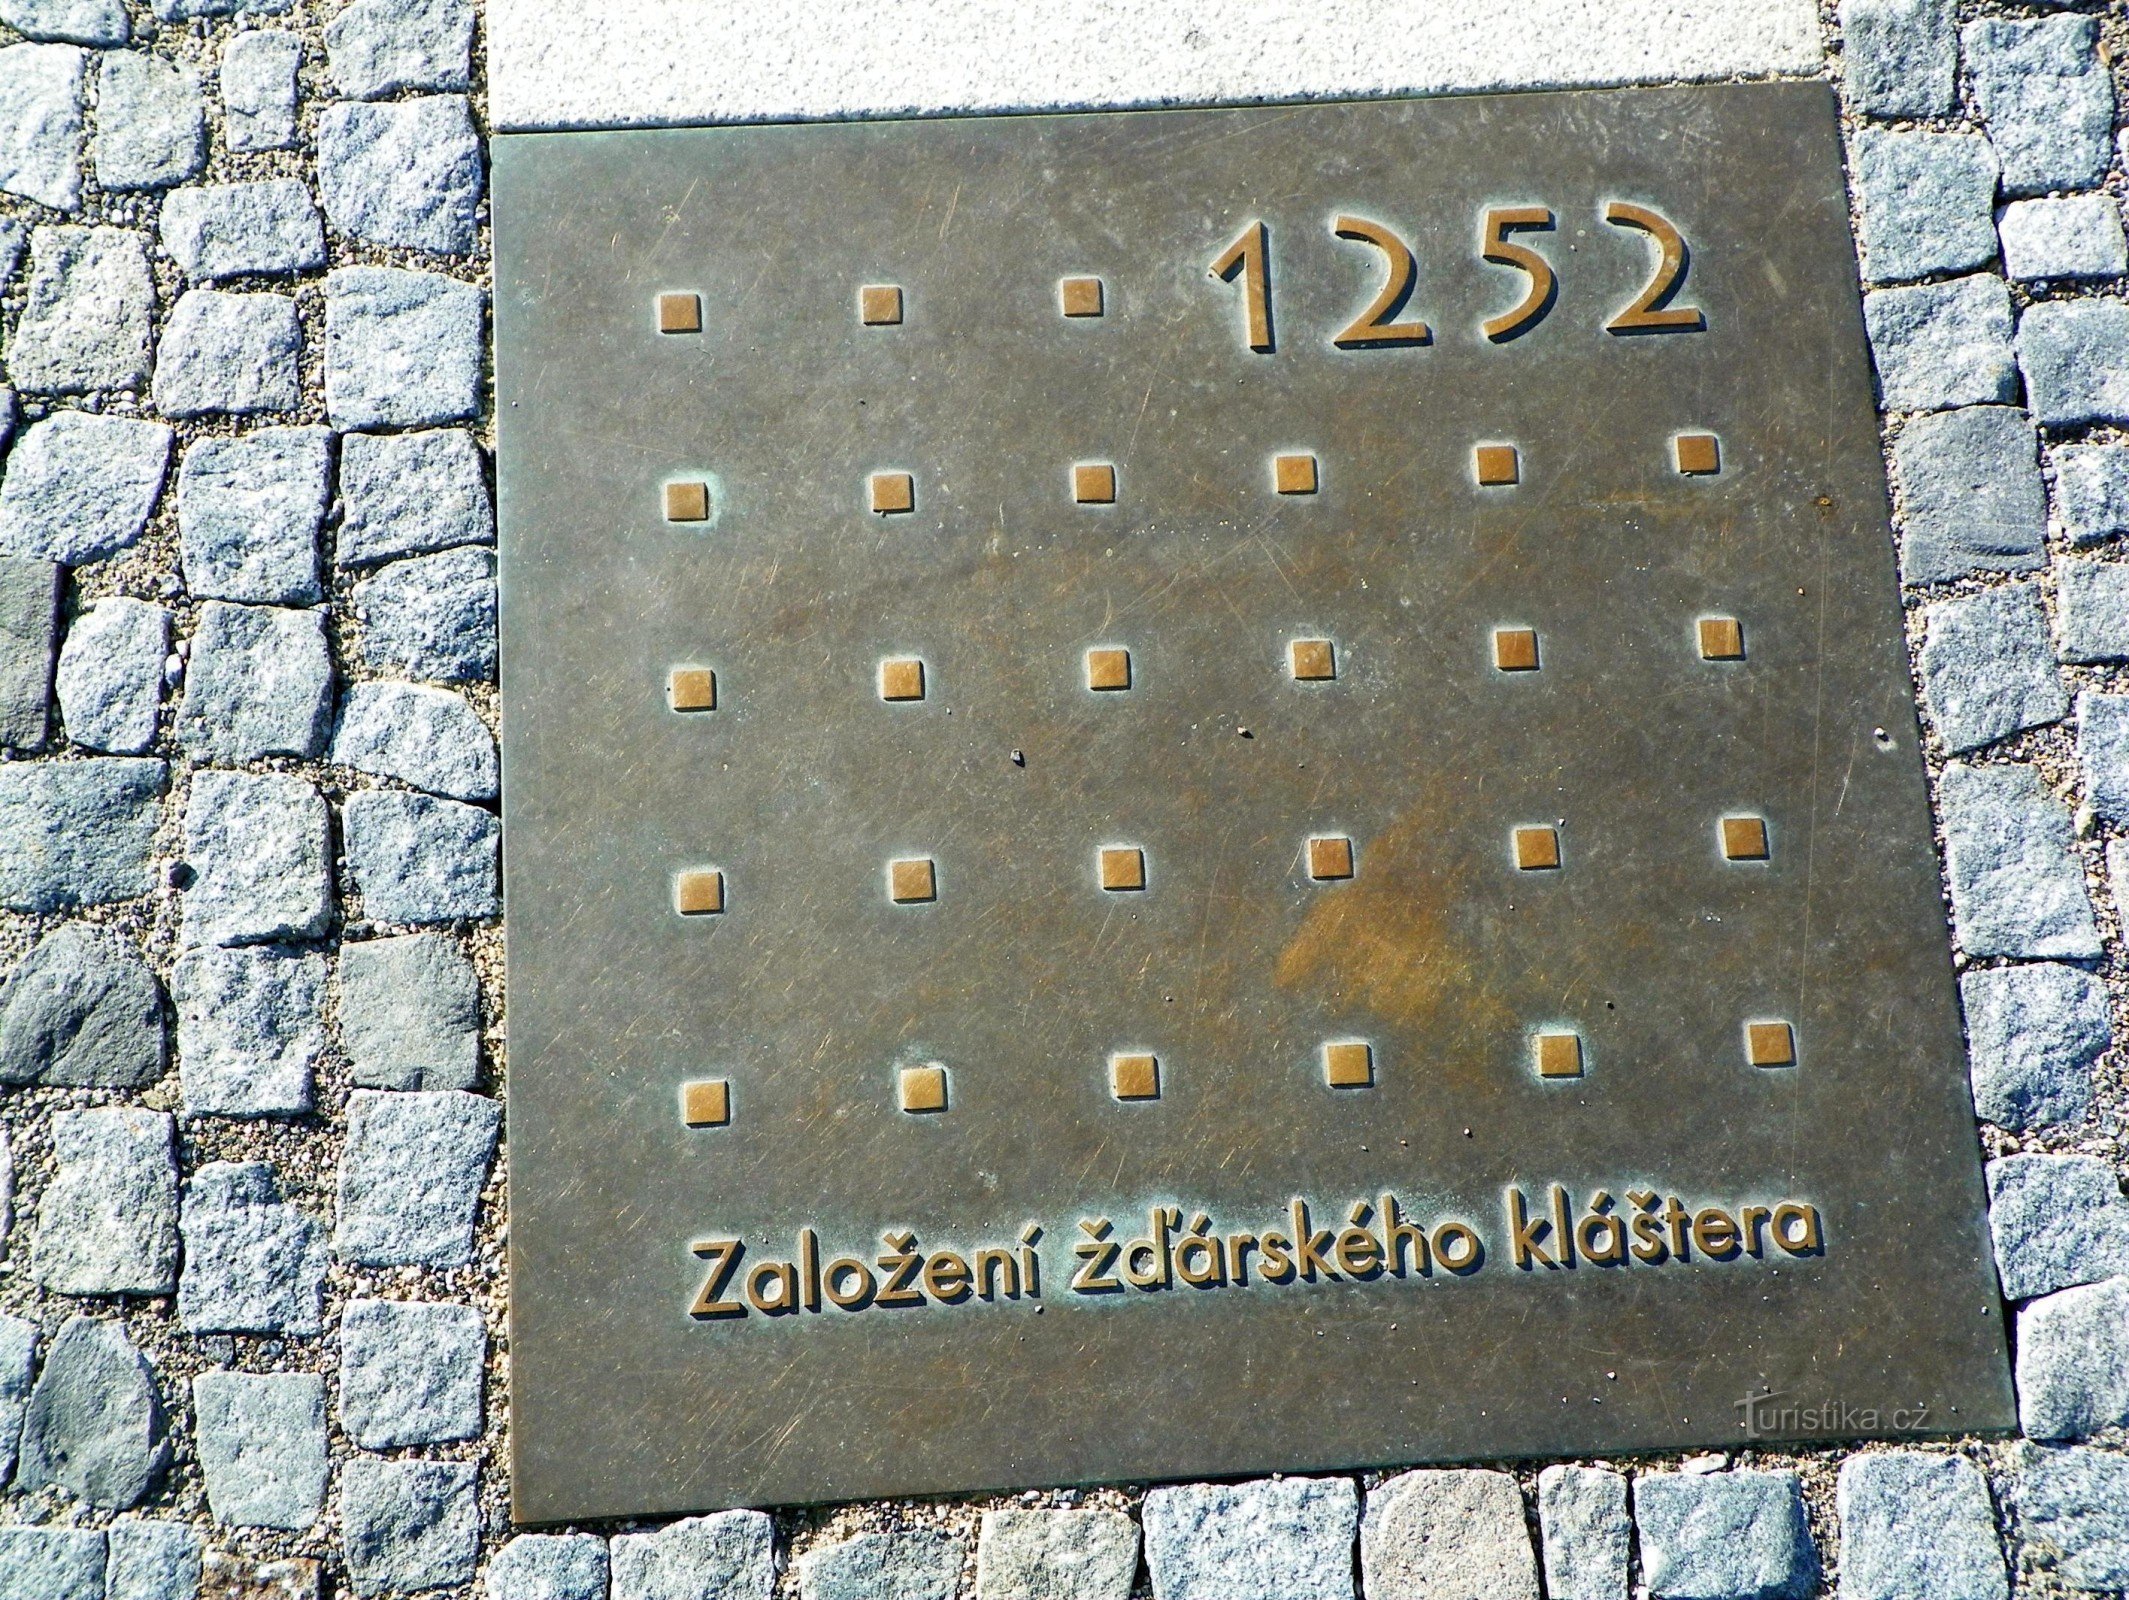 Kamień milowy na osi czasu Žďára